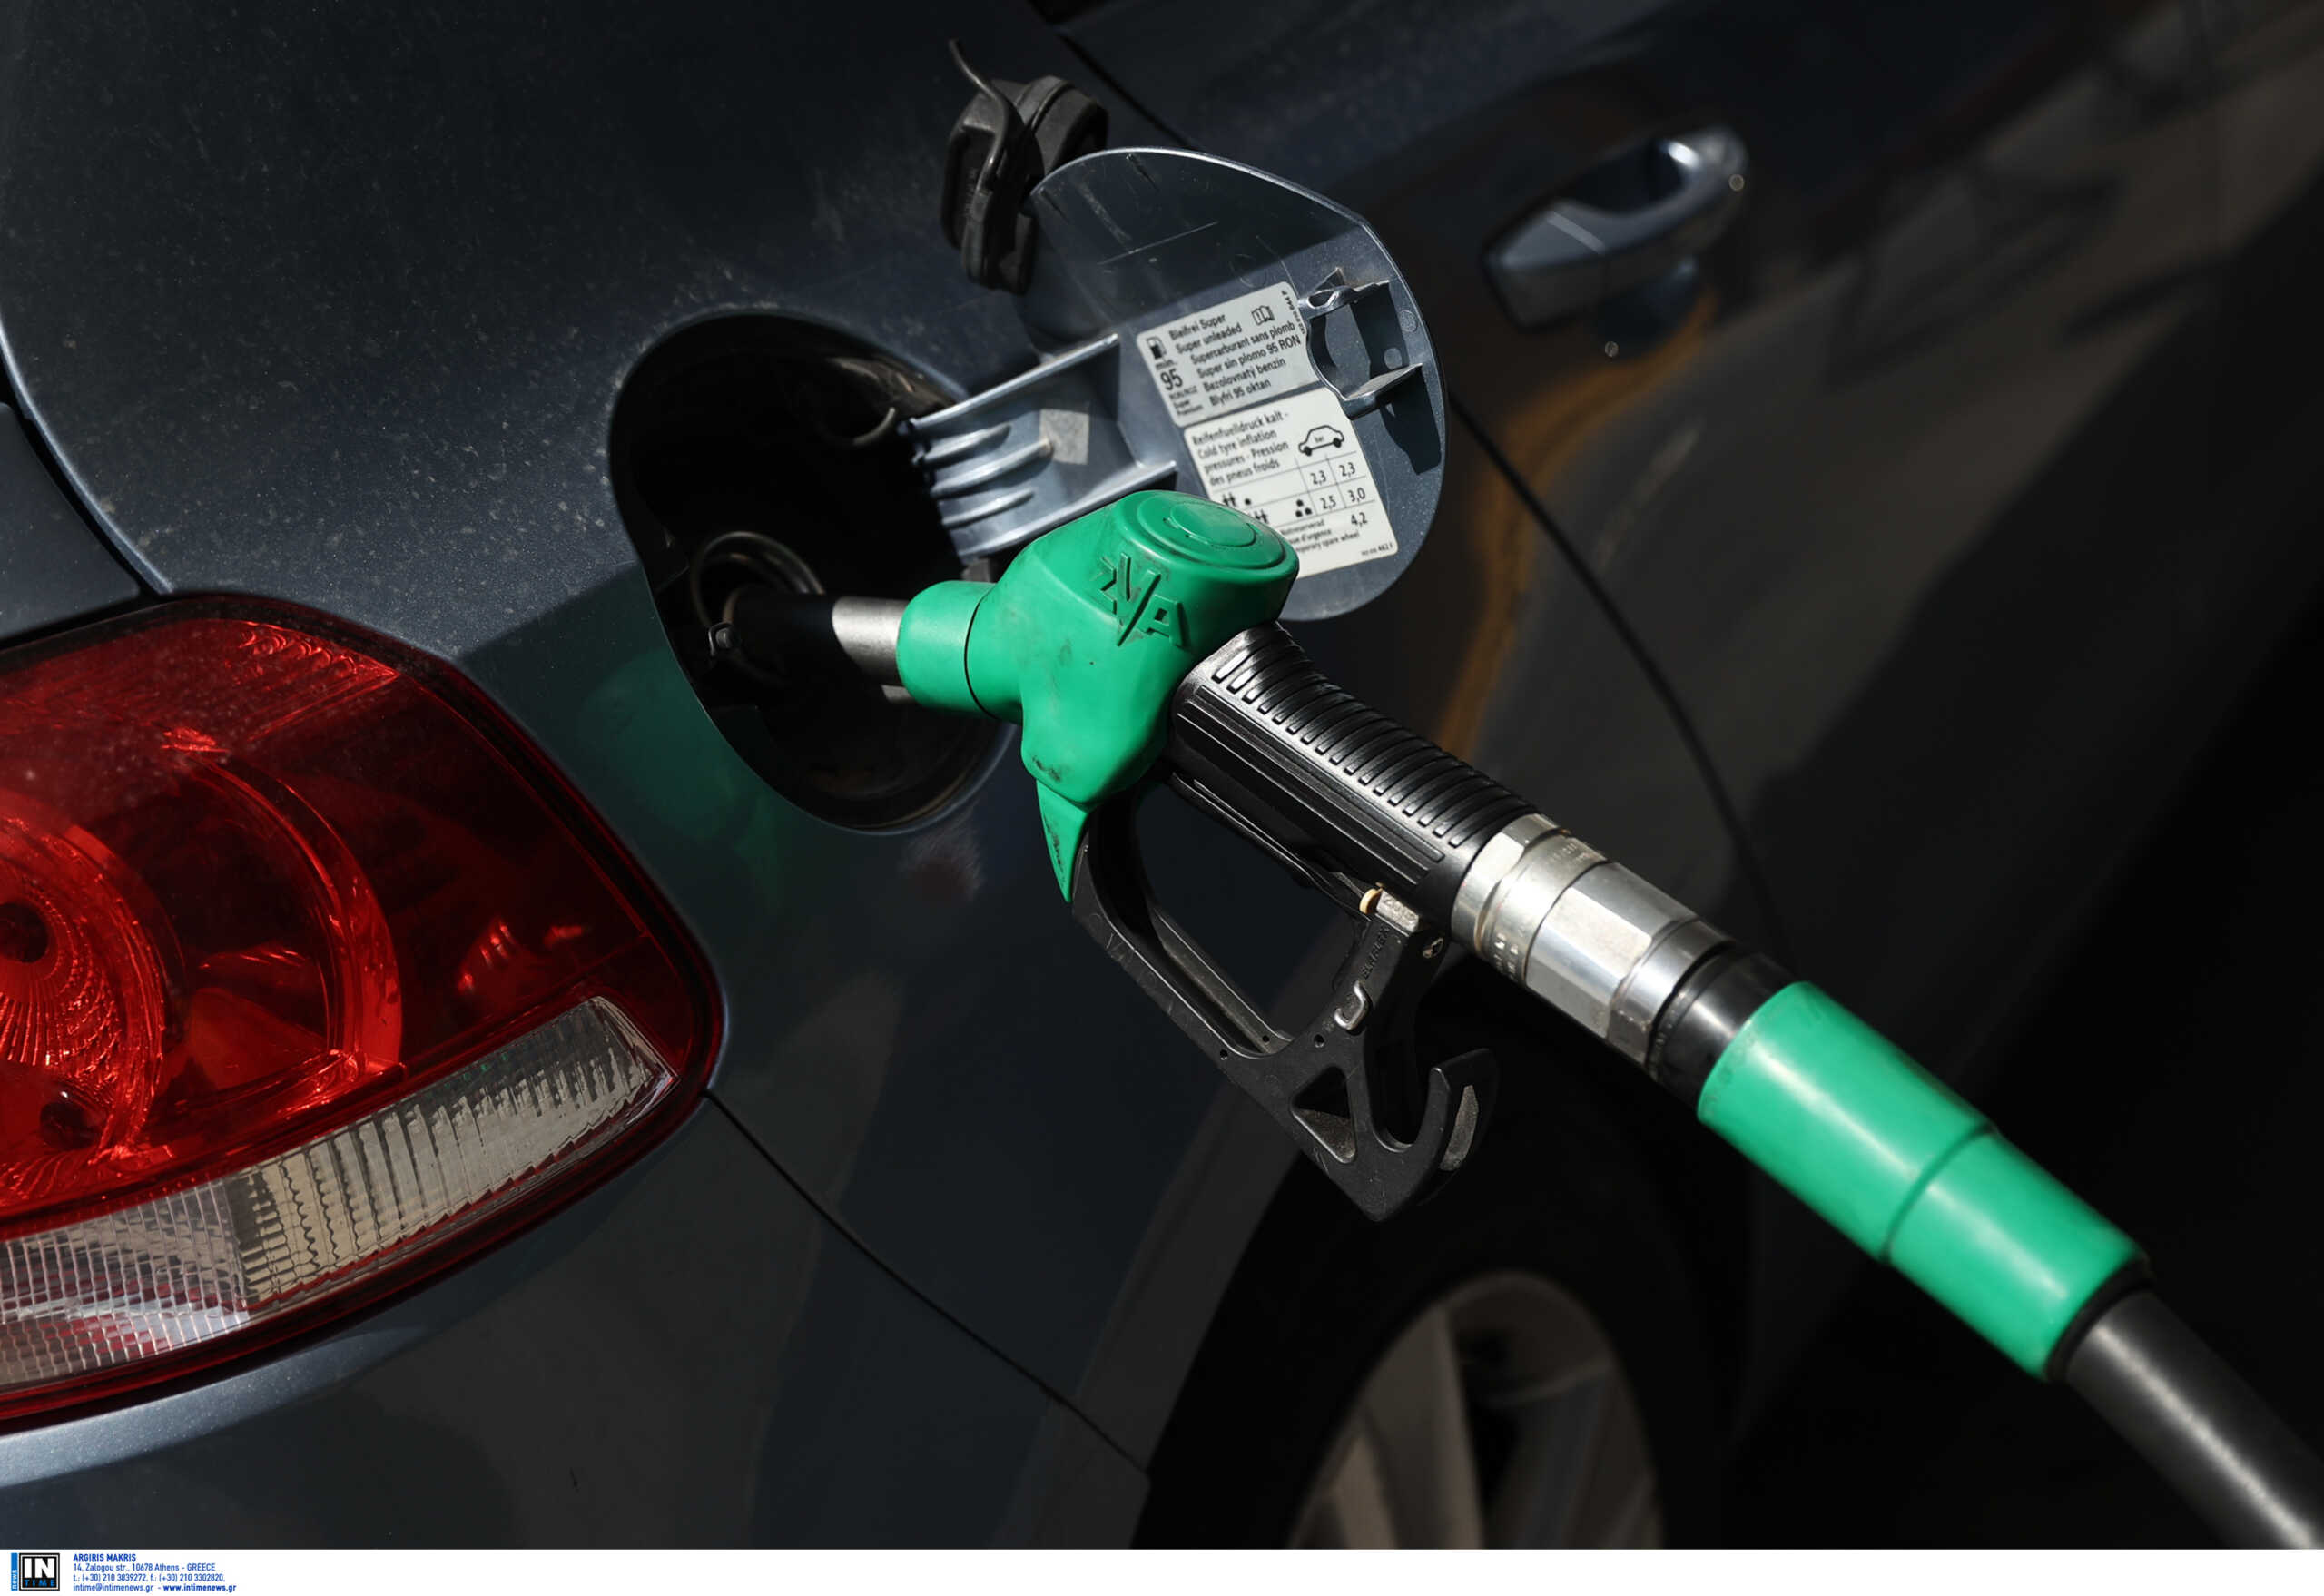 Καύσιμα: Μικρή άνοδος στις λιανικές τιμές, παρά την σημαντική μείωση της κατανάλωσης